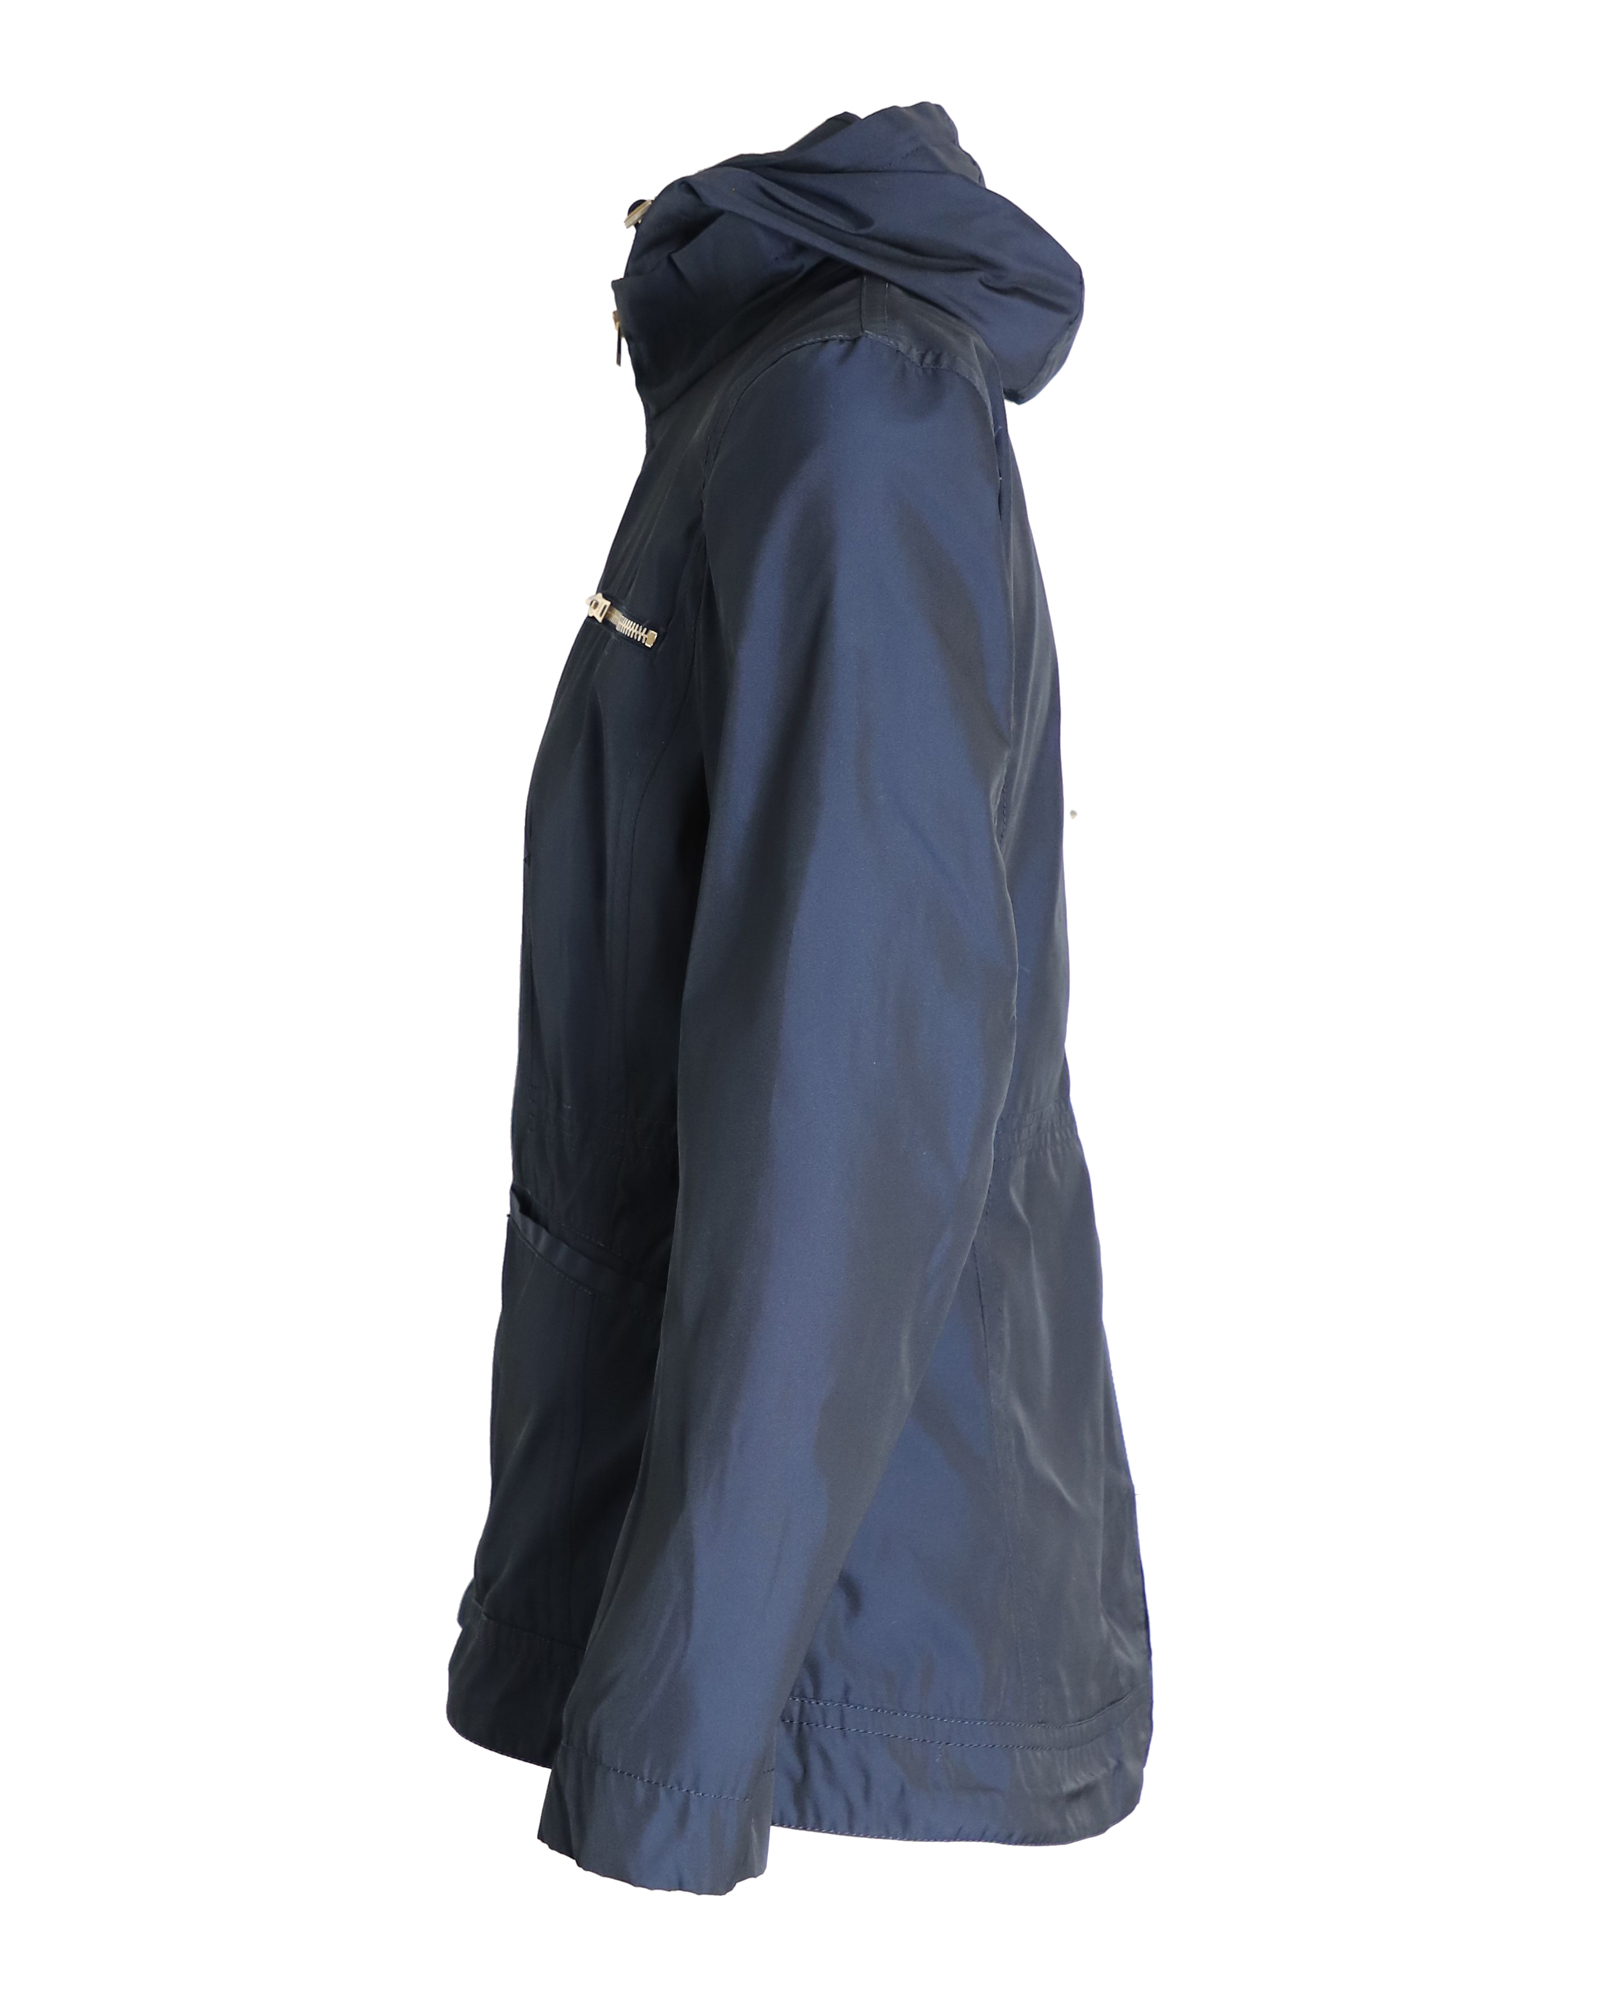 Navy Blue Water-Resistant Hooded Zip Jacket